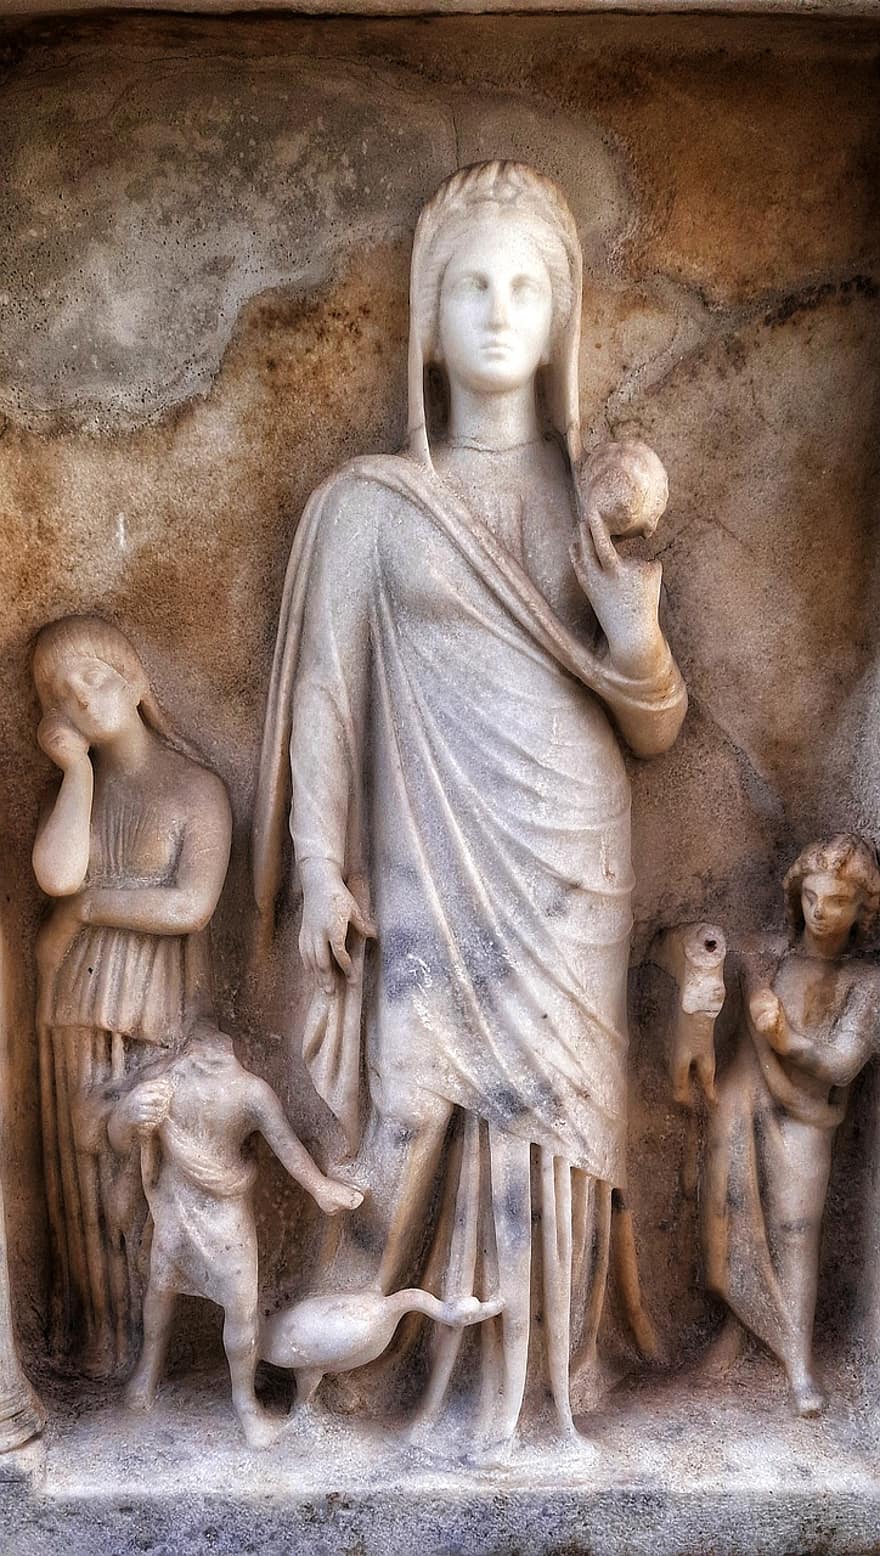 sochařství, umění, žena, antický, Stojící náhrobní kámen, anatolie, muzeum, umělecká díla, křesťanství, náboženství, socha